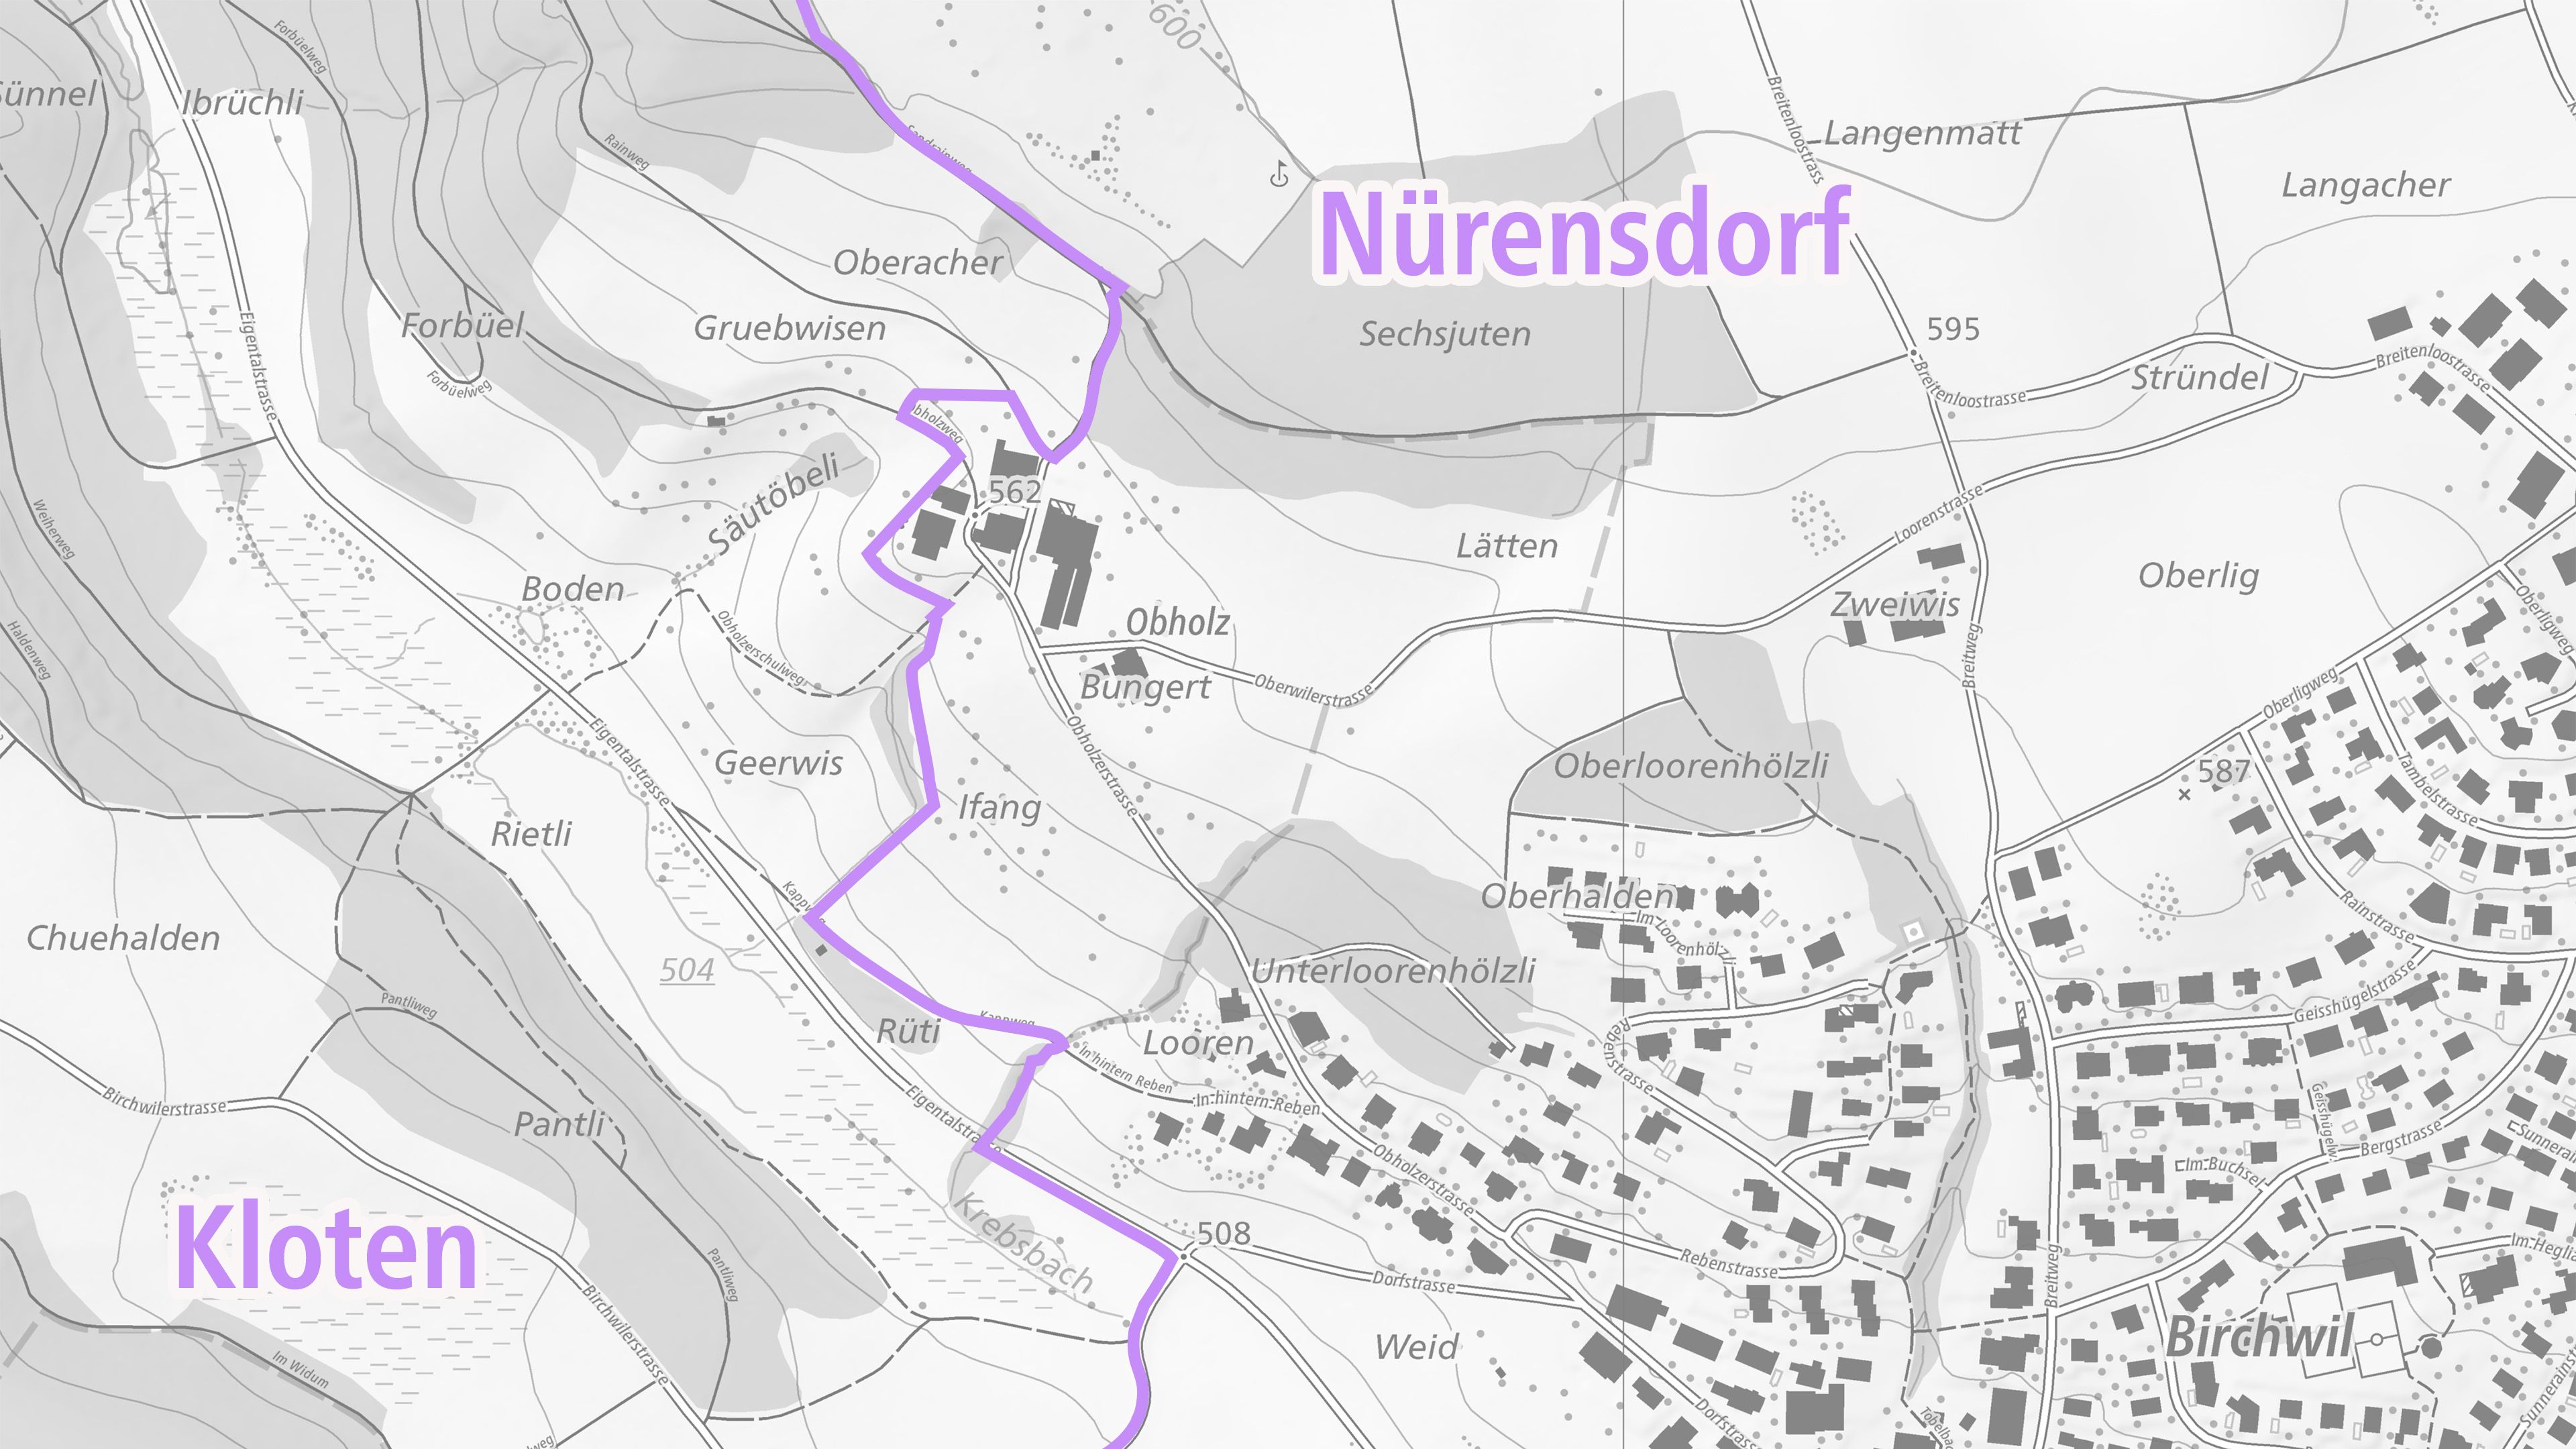 L'image montre le nouveau tracé de la limite entre les communes de Kloten et Nürensdorf sur une carte nationale grise de swisstopo.